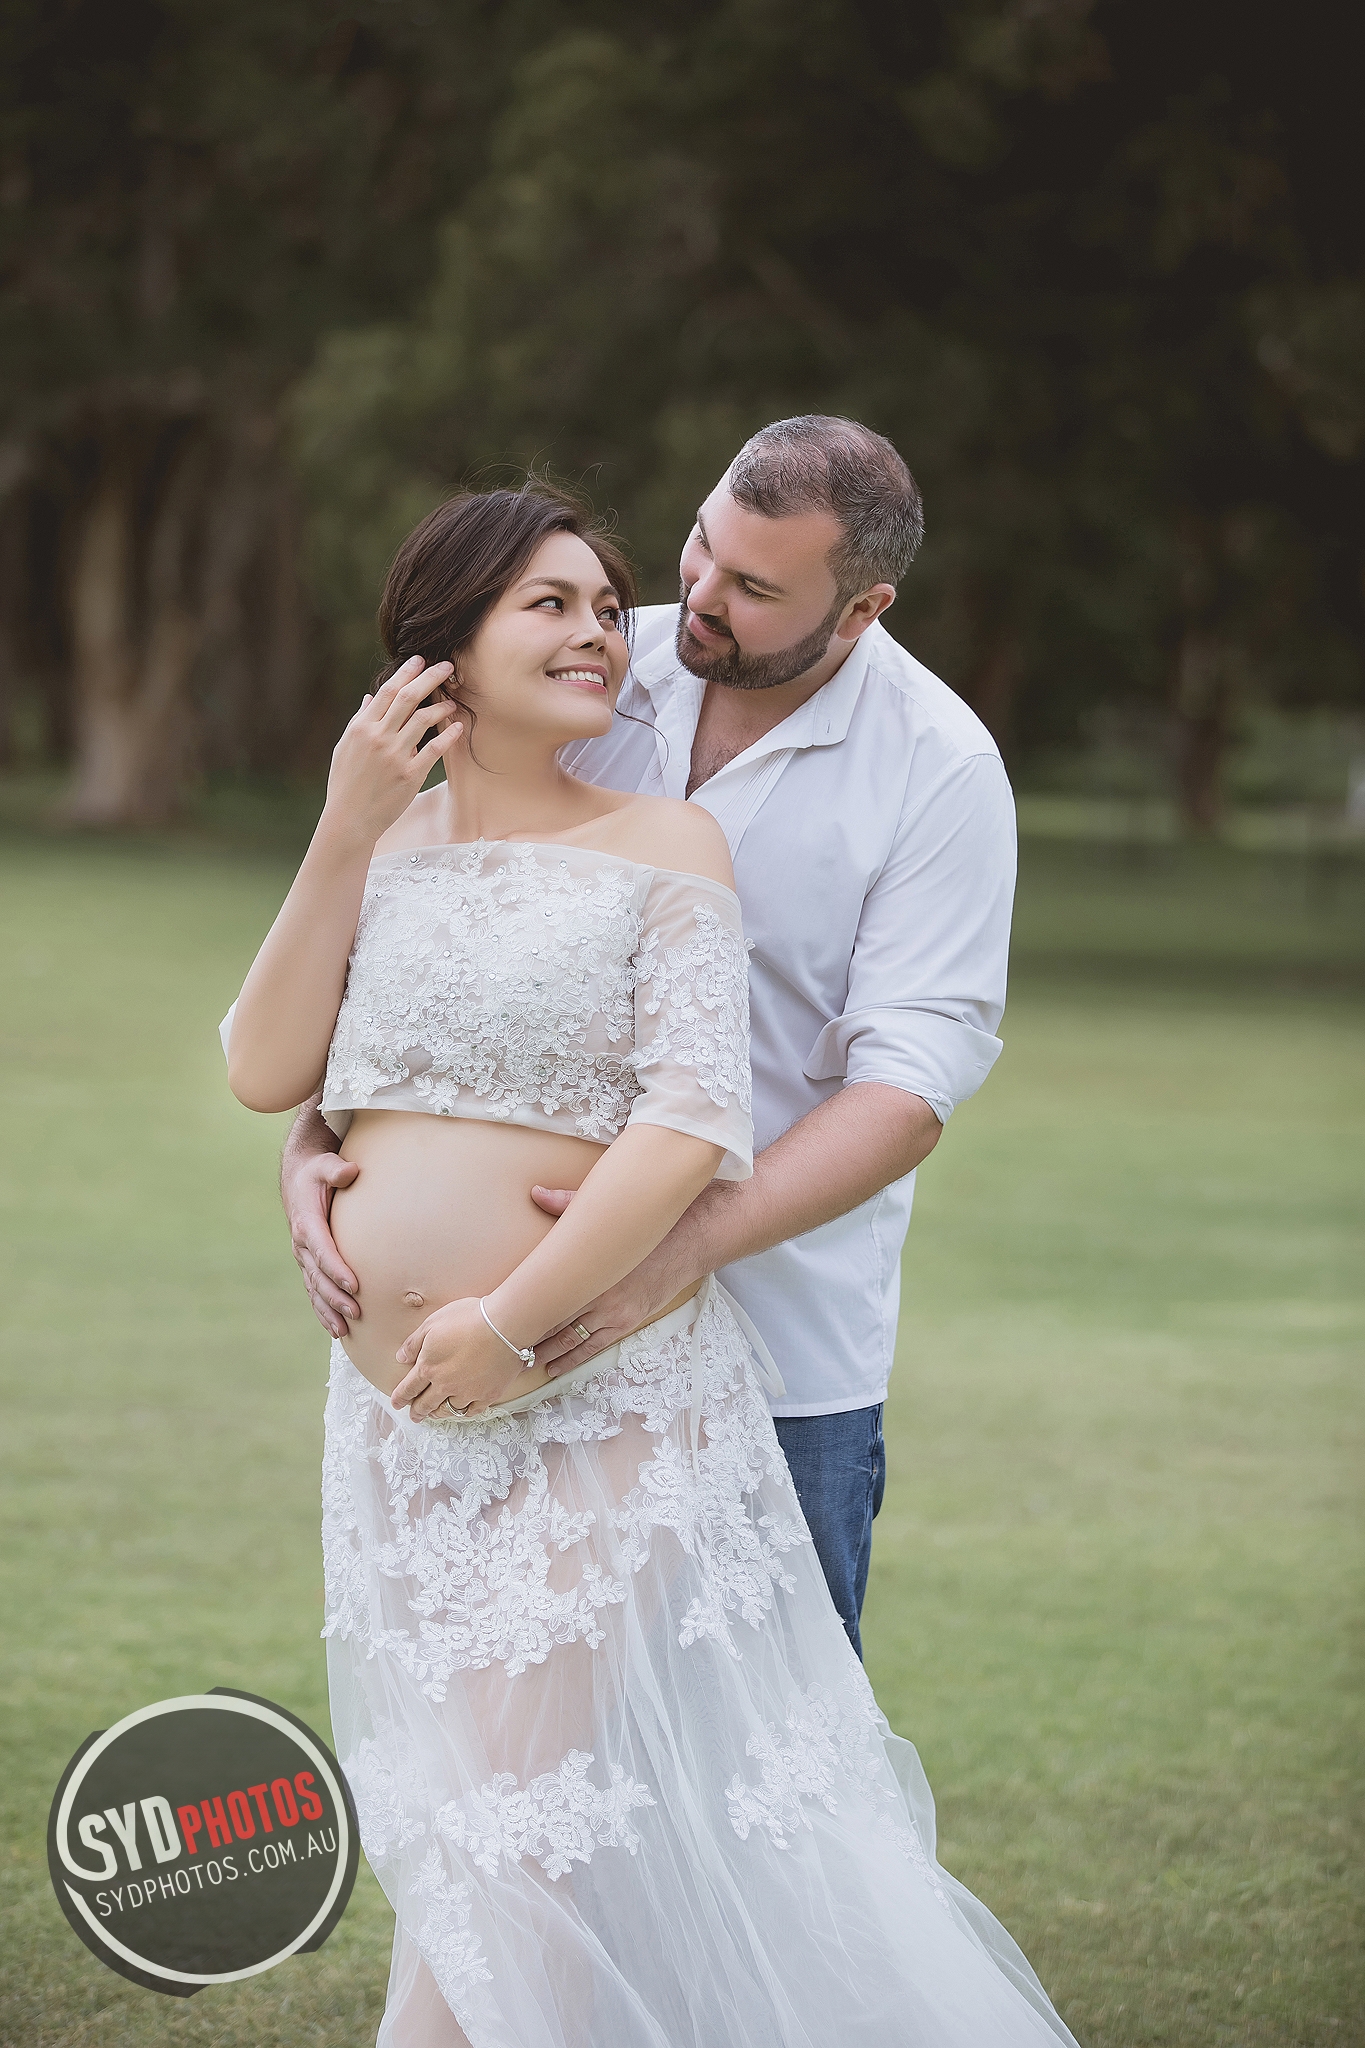 悉尼孕妇照|悉尼孕妇写真|悉尼孕妇摄影| ️SYDPHOTOS经典悉尼婚纱照|悉尼婚纱摄影|悉尼婚礼摄影|悉尼婚礼策划